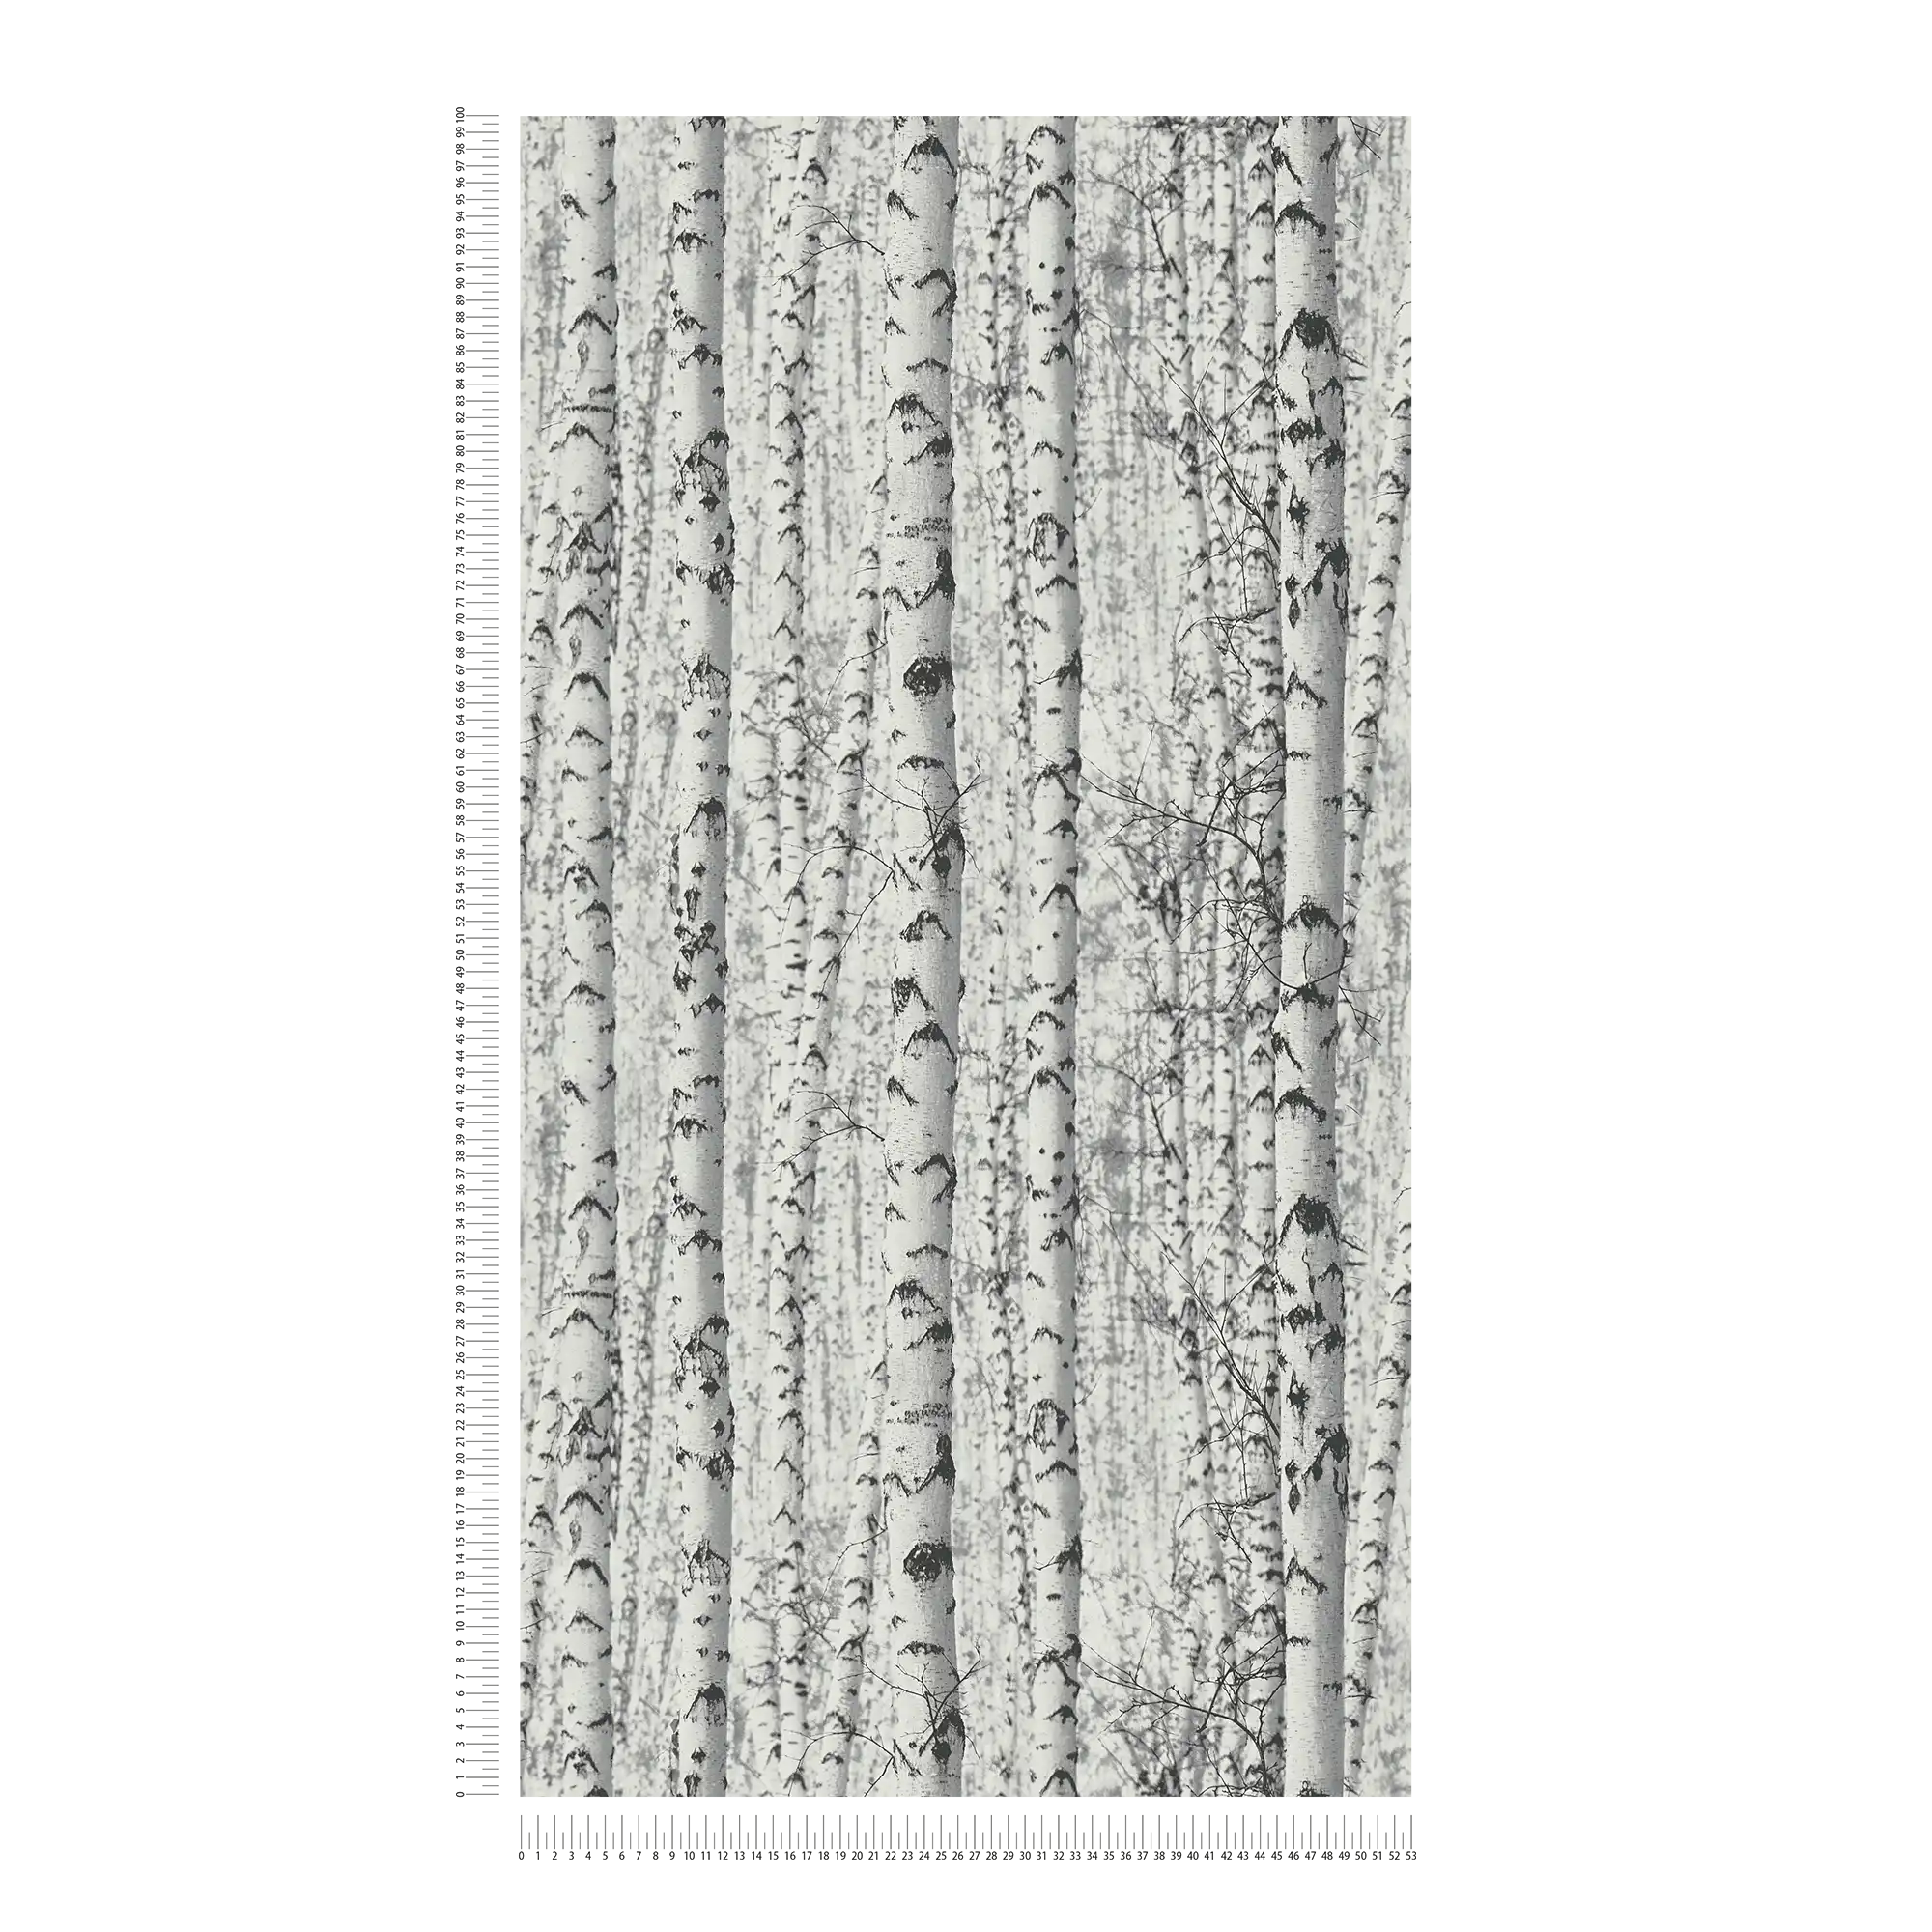             Papel pintado blanco y negro bosque de abedules 3D - blanco, negro
        